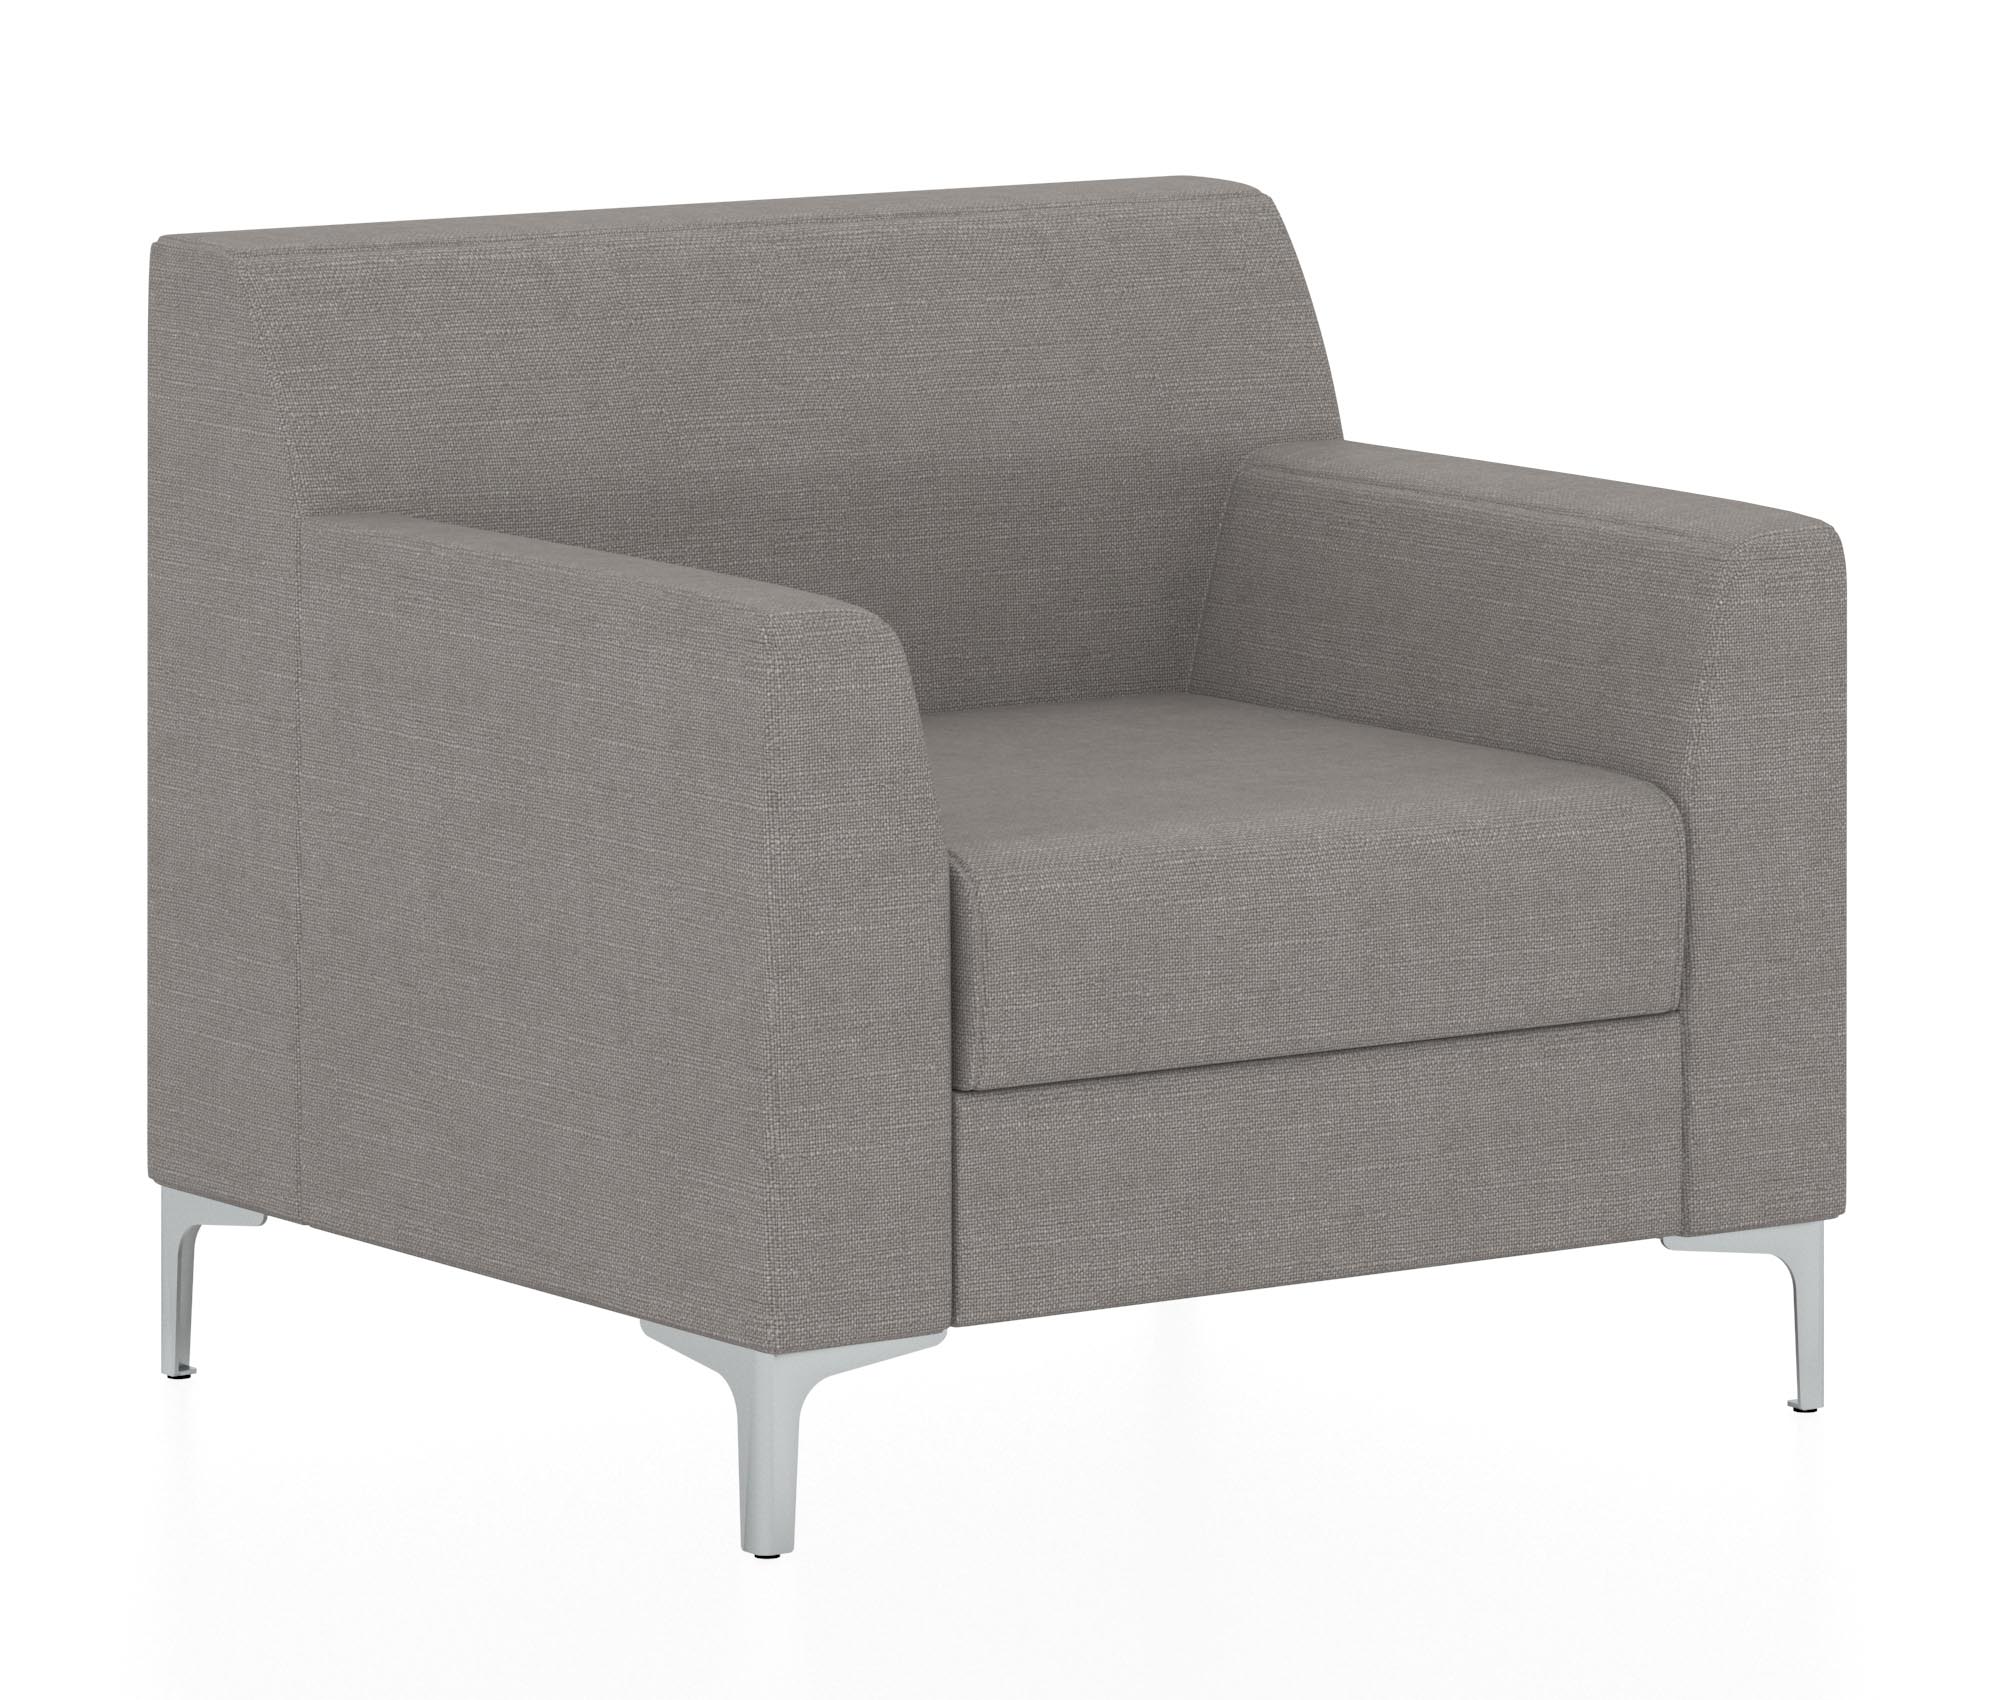 Классический двухместный диван. Обивка из ткани серого цвета (Twist 21)